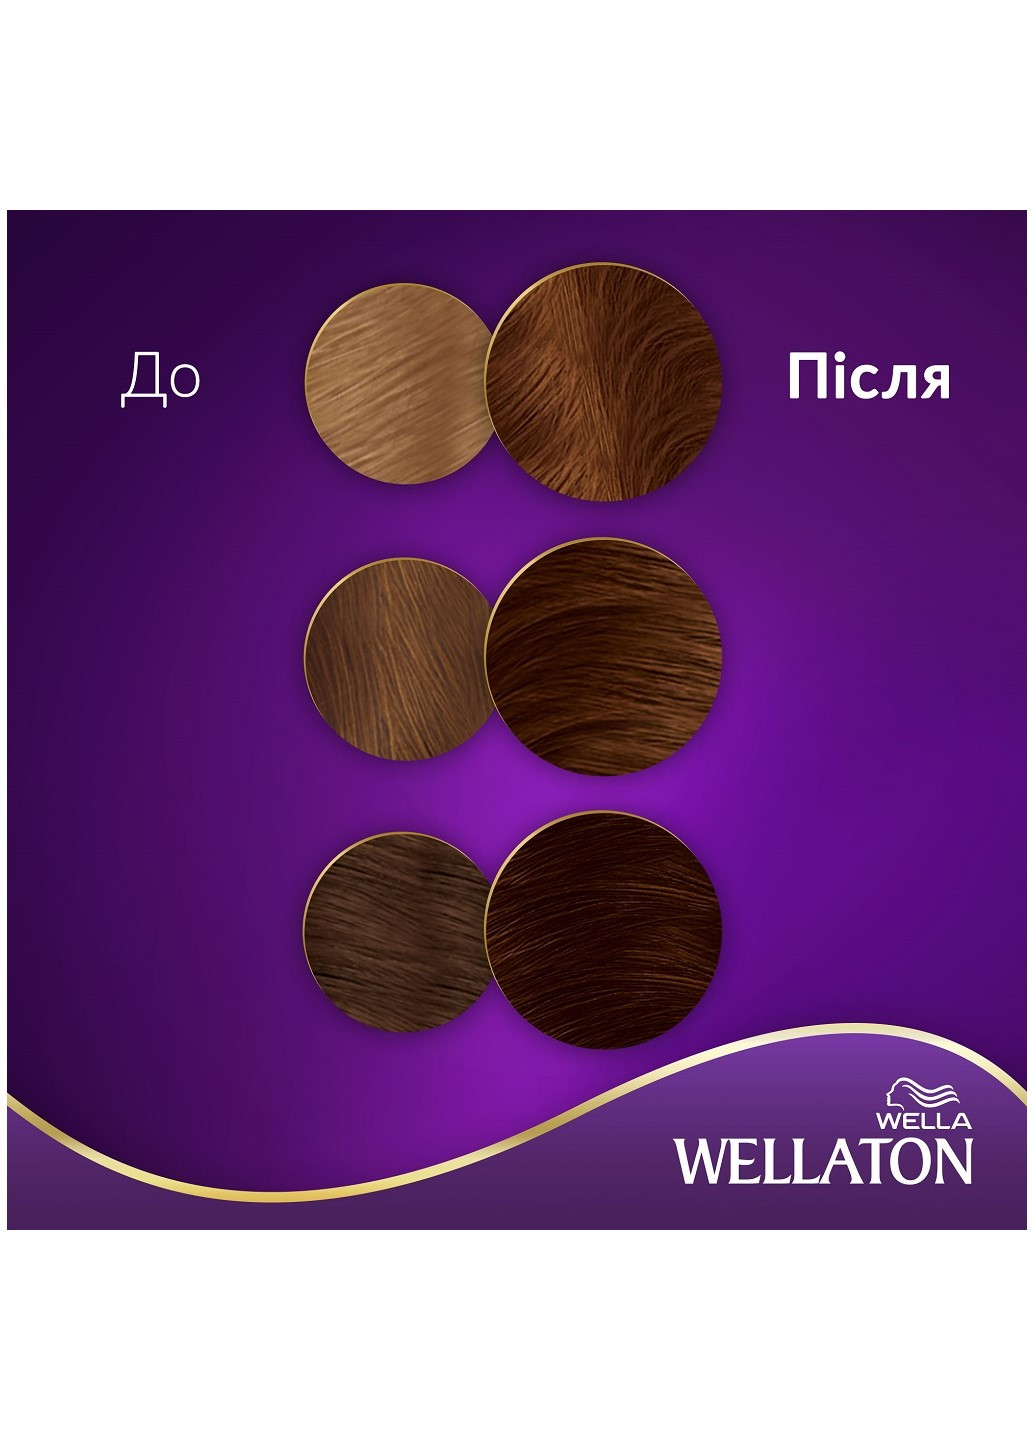 Стойкая кремкраска для волос Какао 5/77 Wellaton - (197835598)